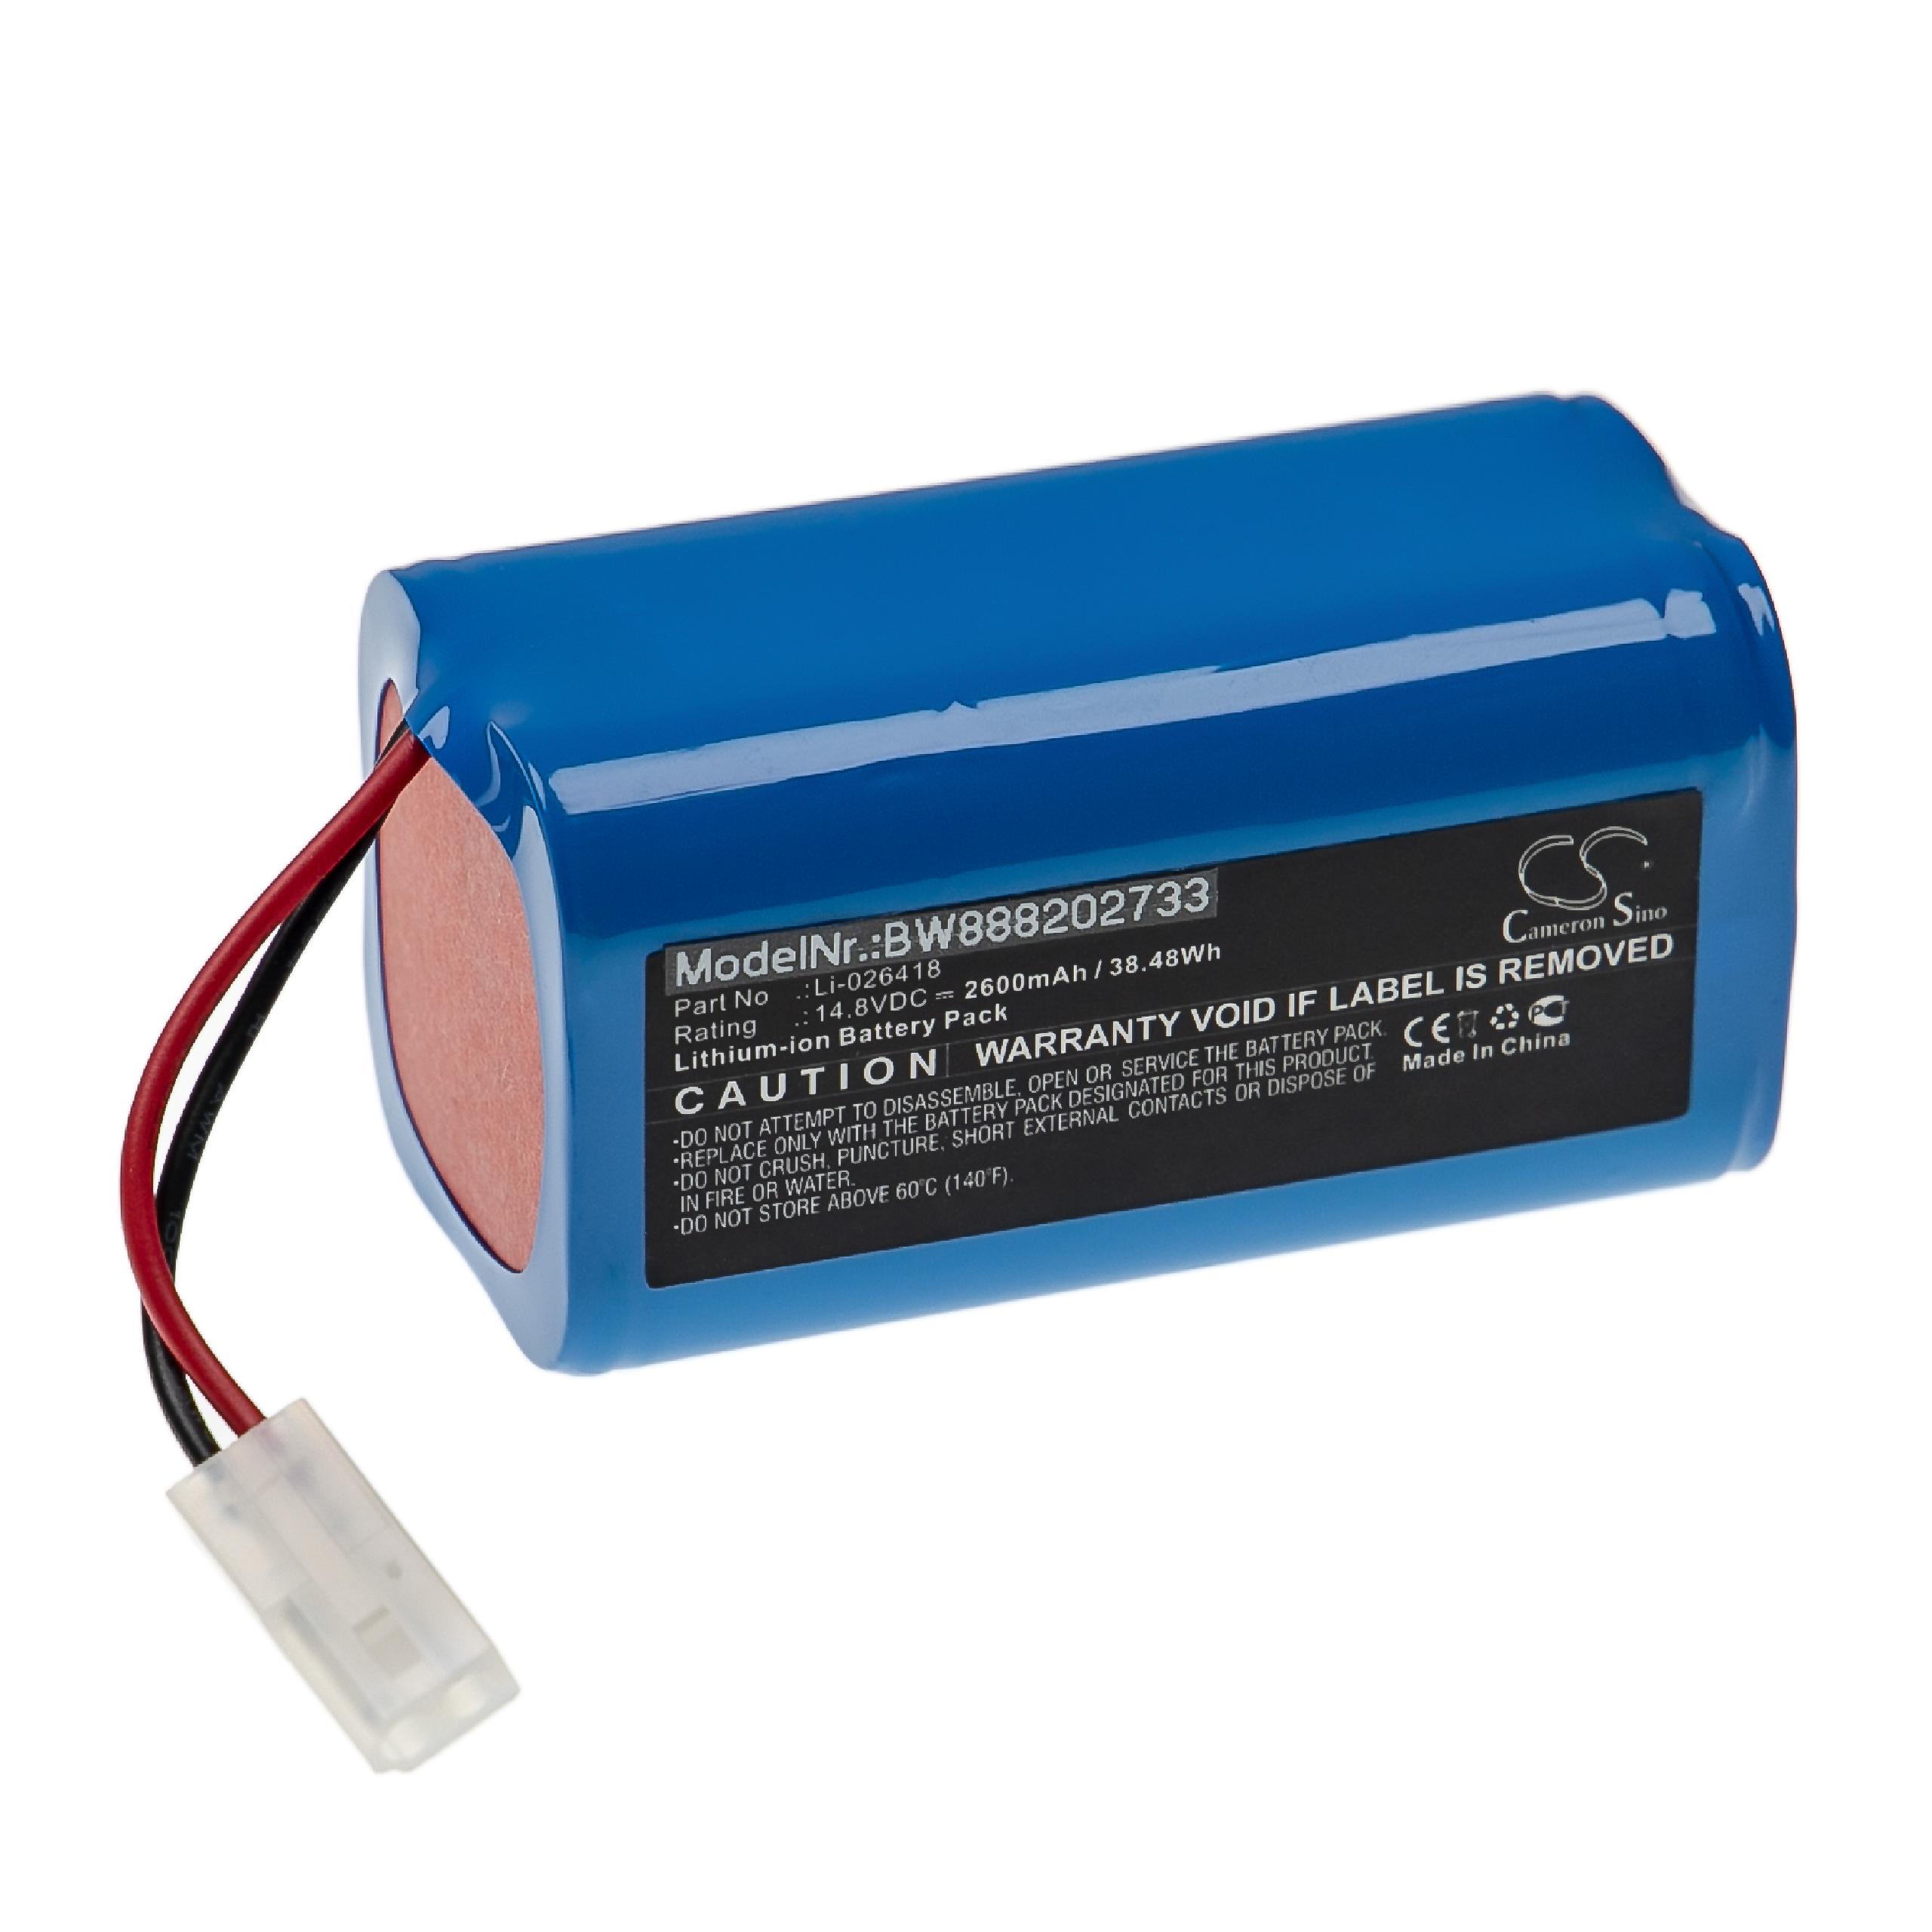 Batterie remplace myVacBot Li-026418 pour robot aspirateur - 2600mAh 14,8V Li-ion